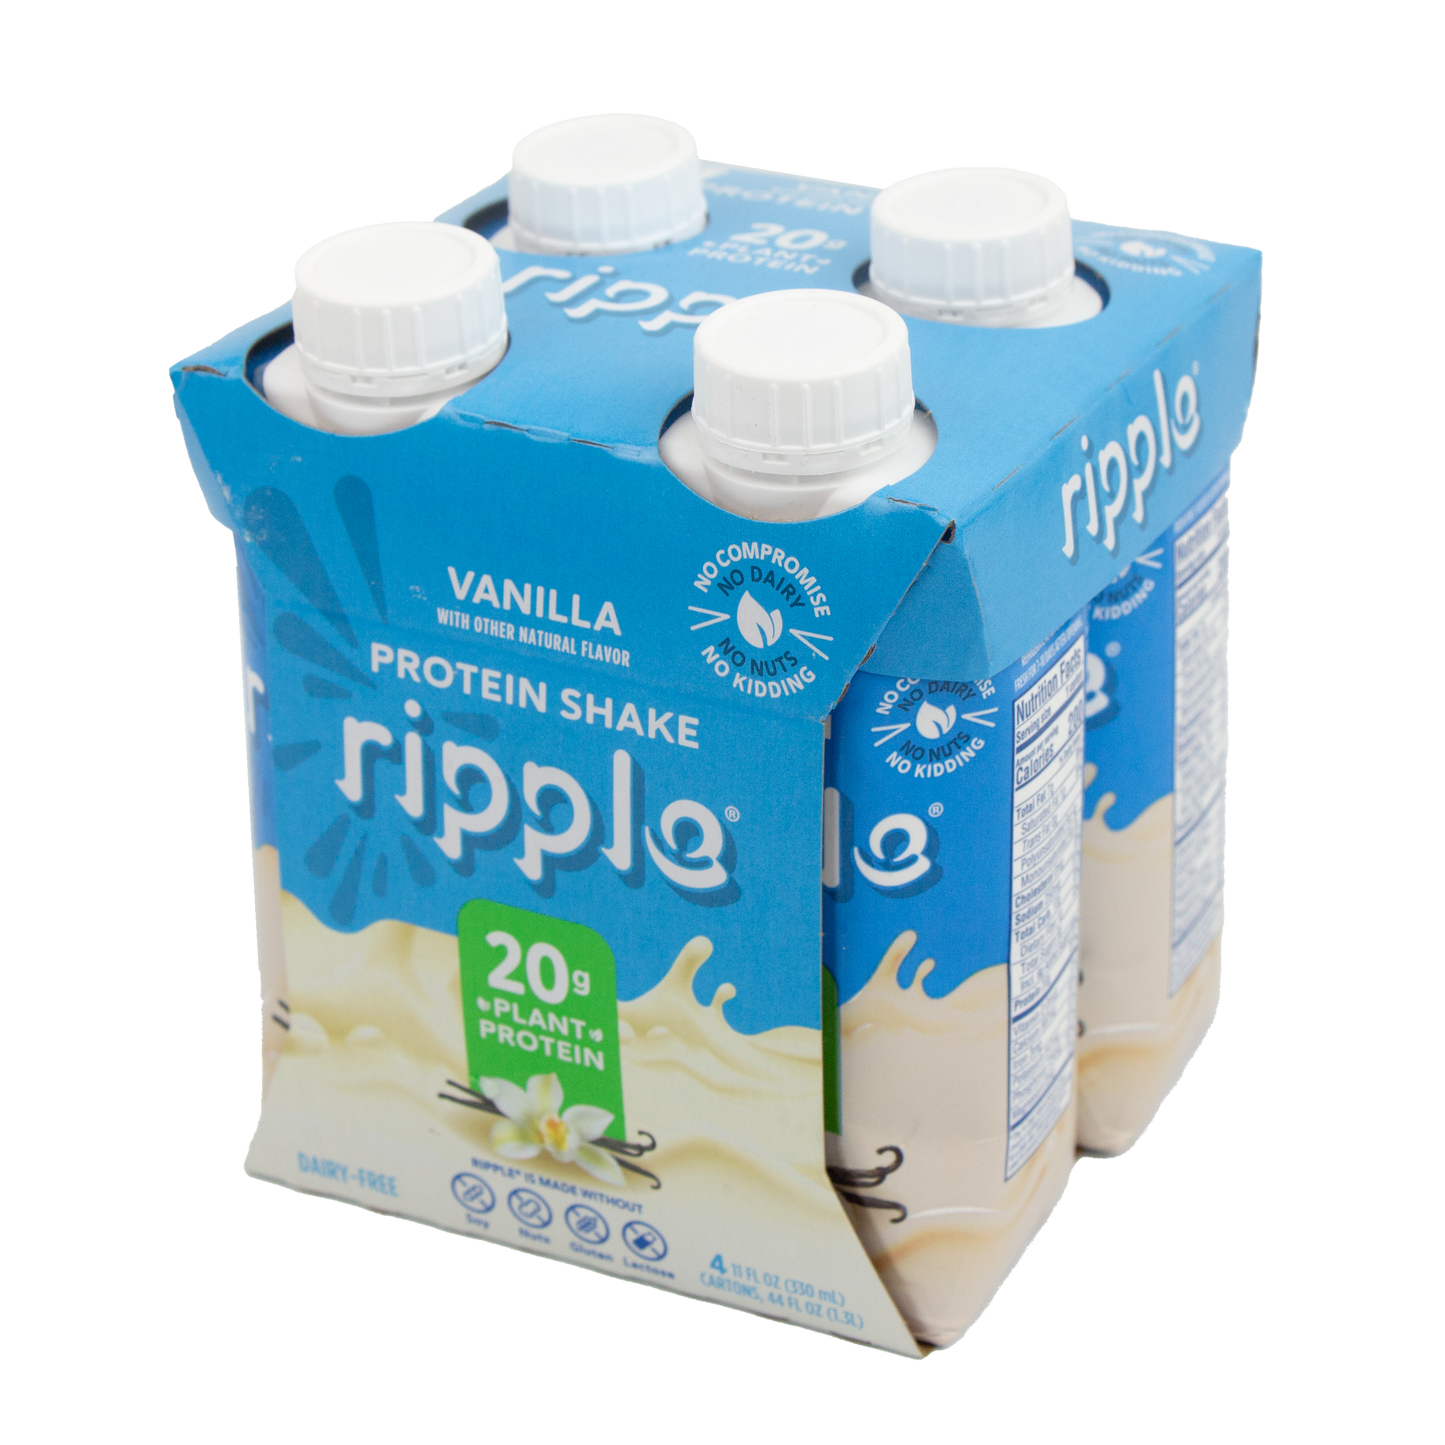 Ripple Protein Shake - Vanilla (20 grams)